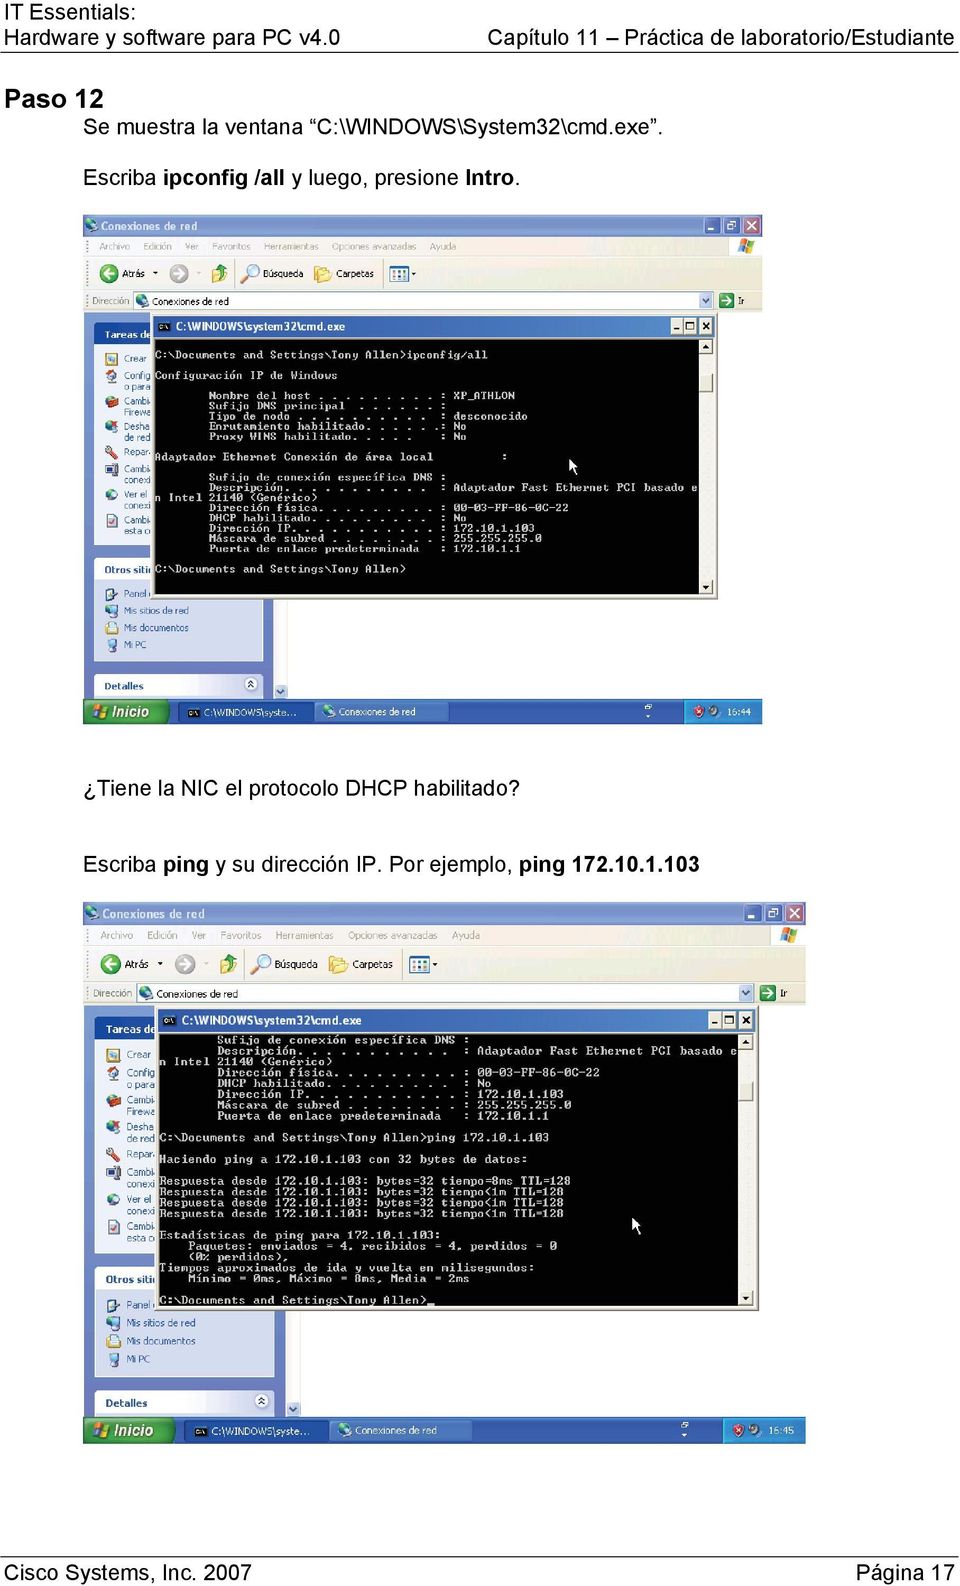 Tiene la NIC el protocolo DHCP habilitado?